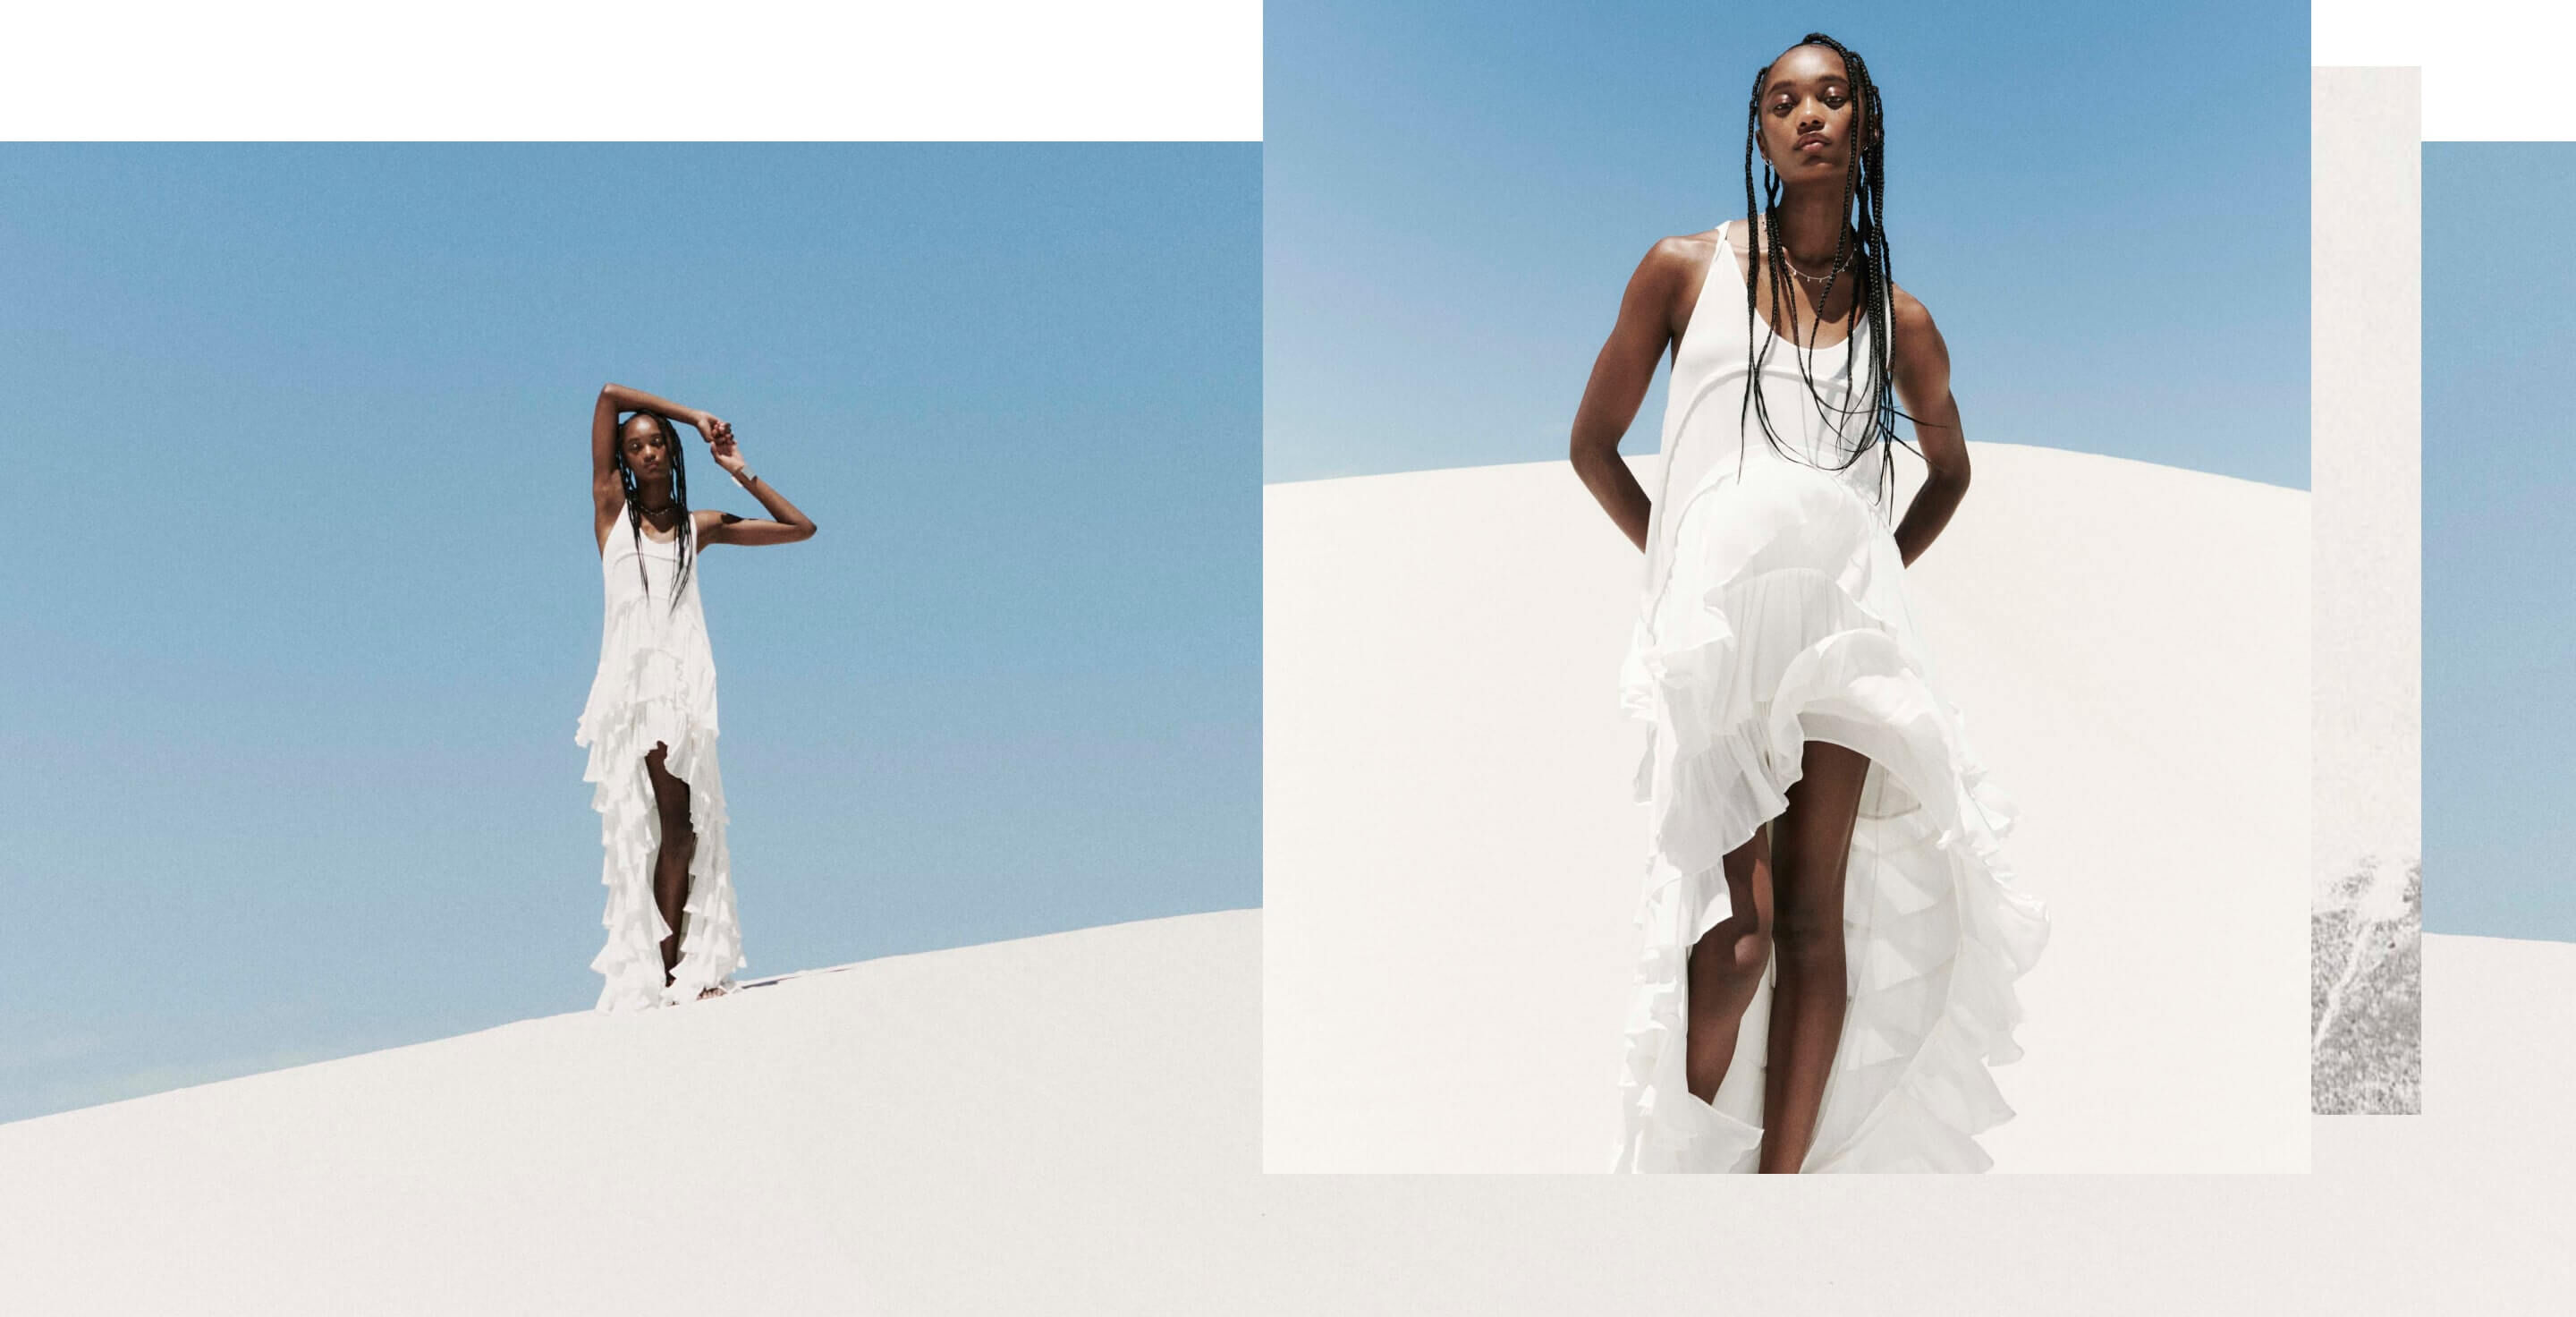 Collage aus zwei Fotografien, die eine Frau in einem langen, gerüschten, asymmetrischen Kleid zeigen, die auf einer weißen Düne vor einem blauen Himmel steht